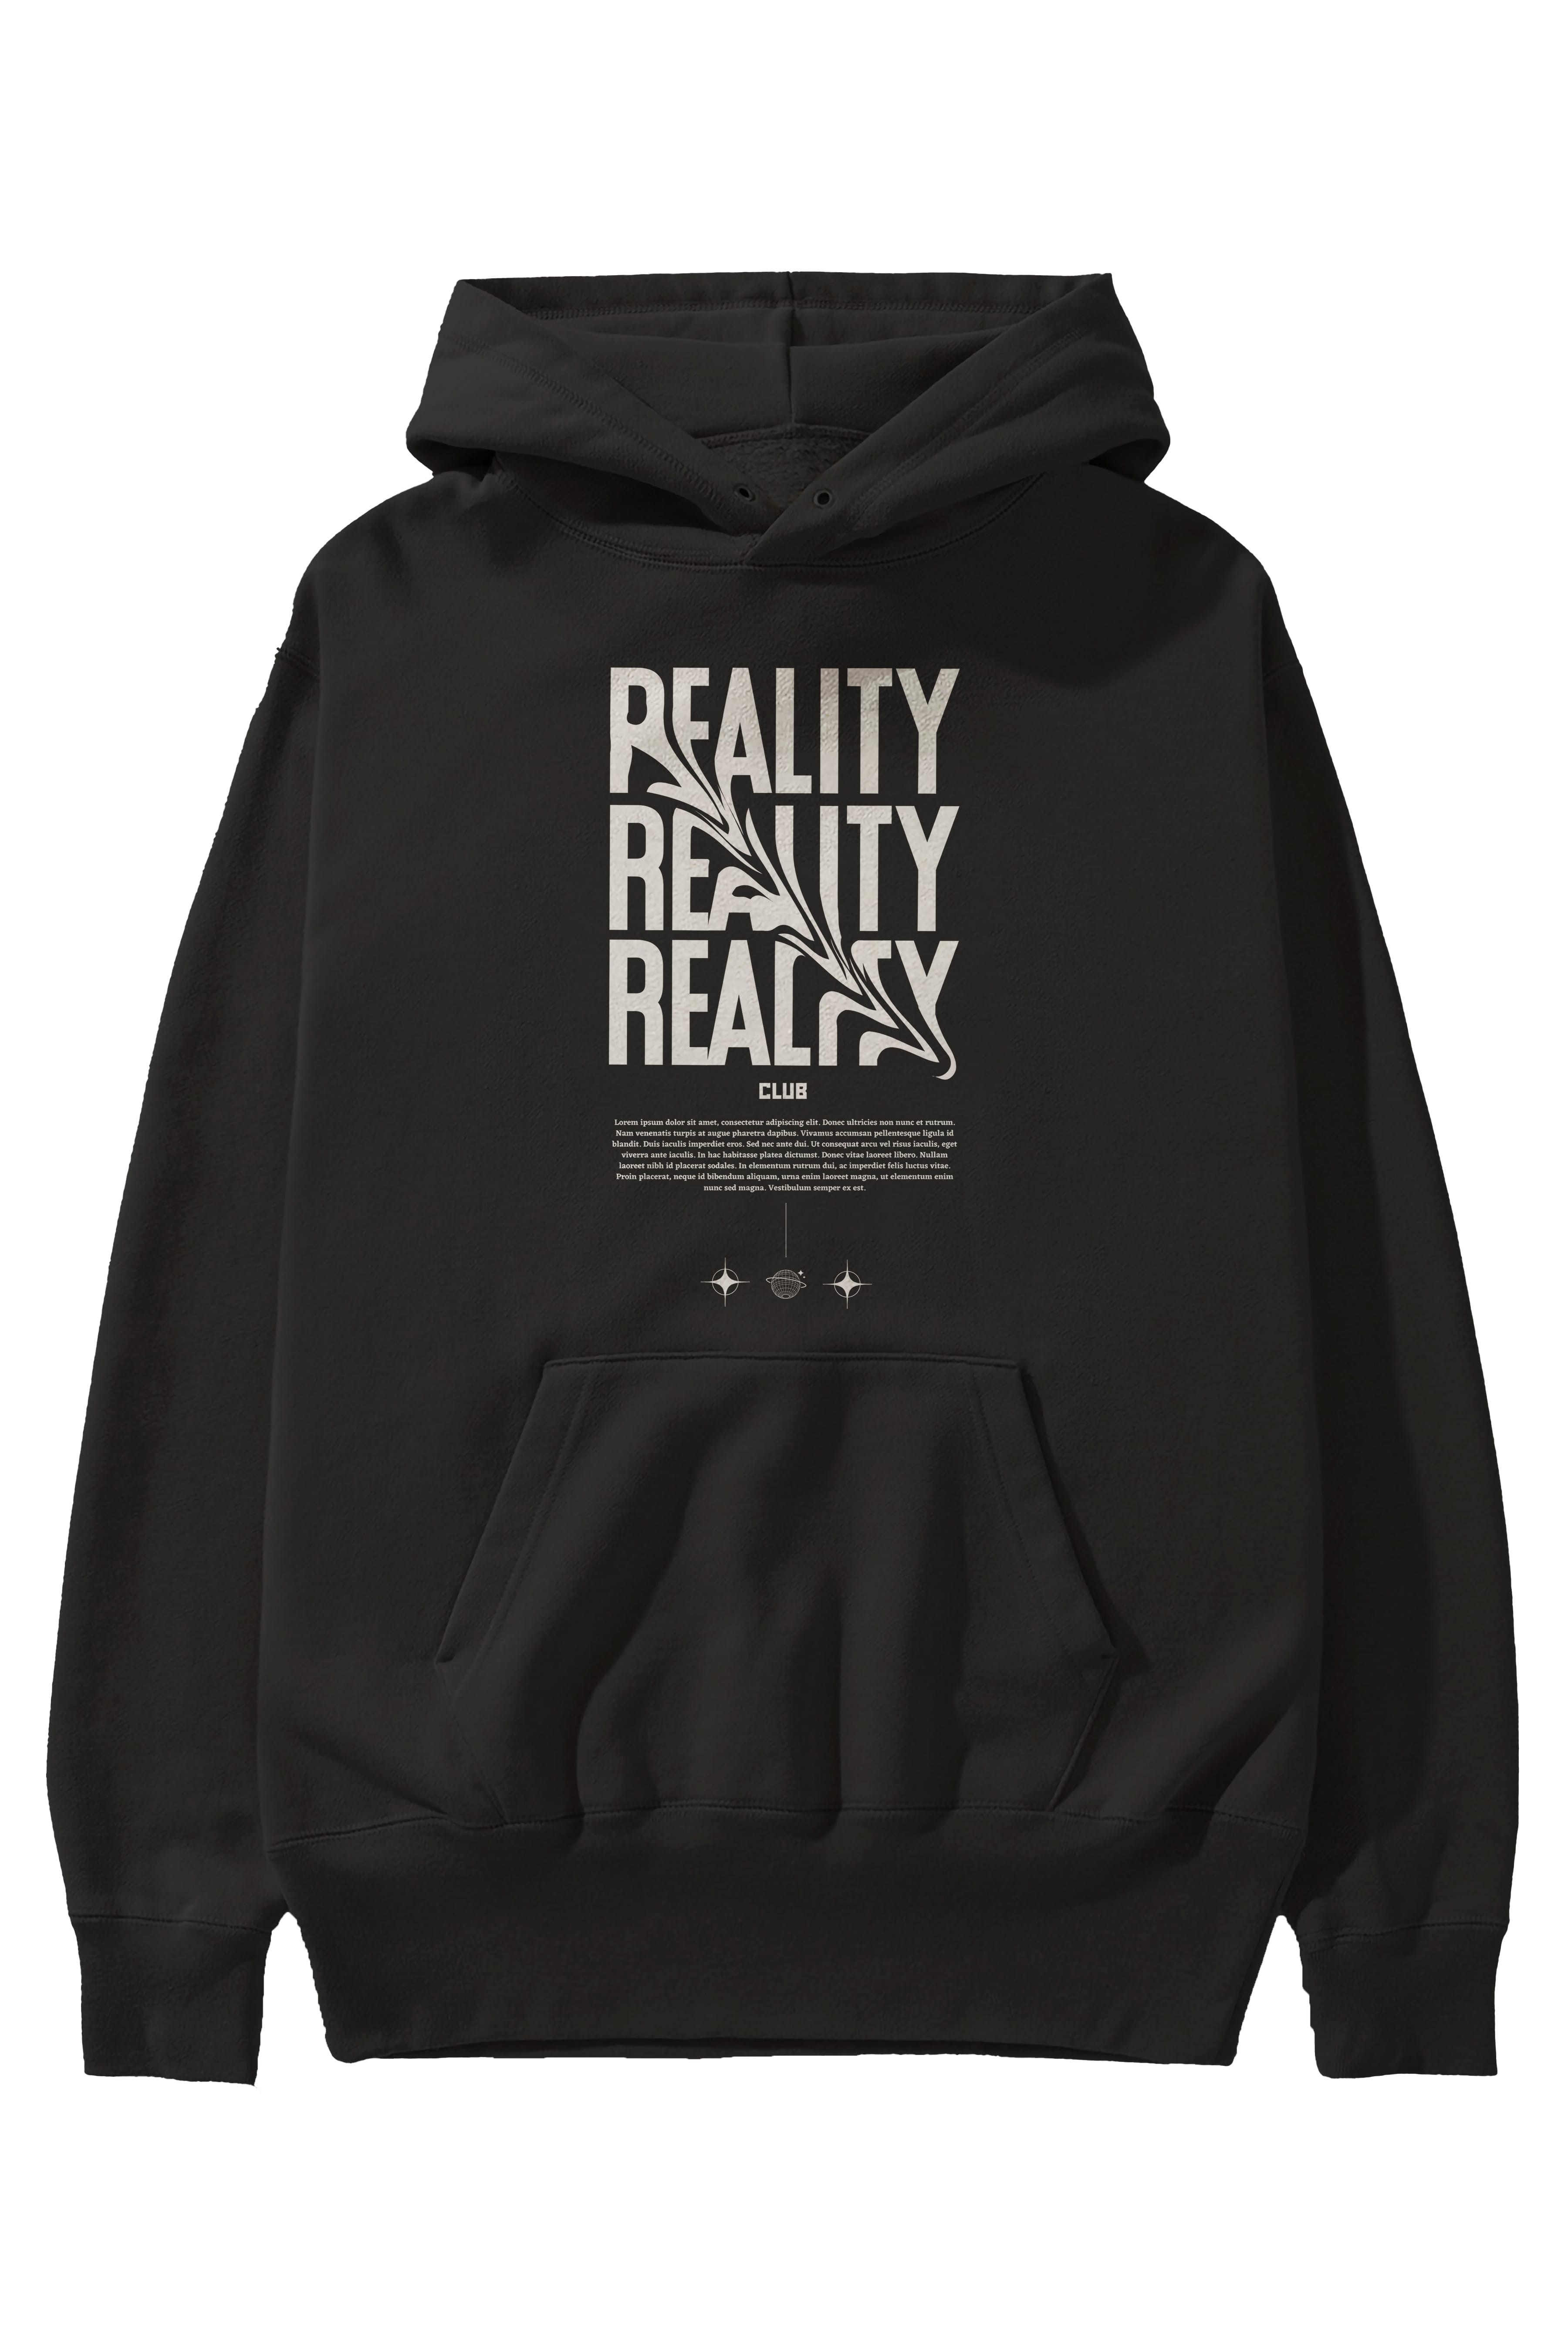 Reality Yazılı Ön Baskılı Oversize Hoodie Kapüşonlu Sweatshirt Erkek Kadın Unisex